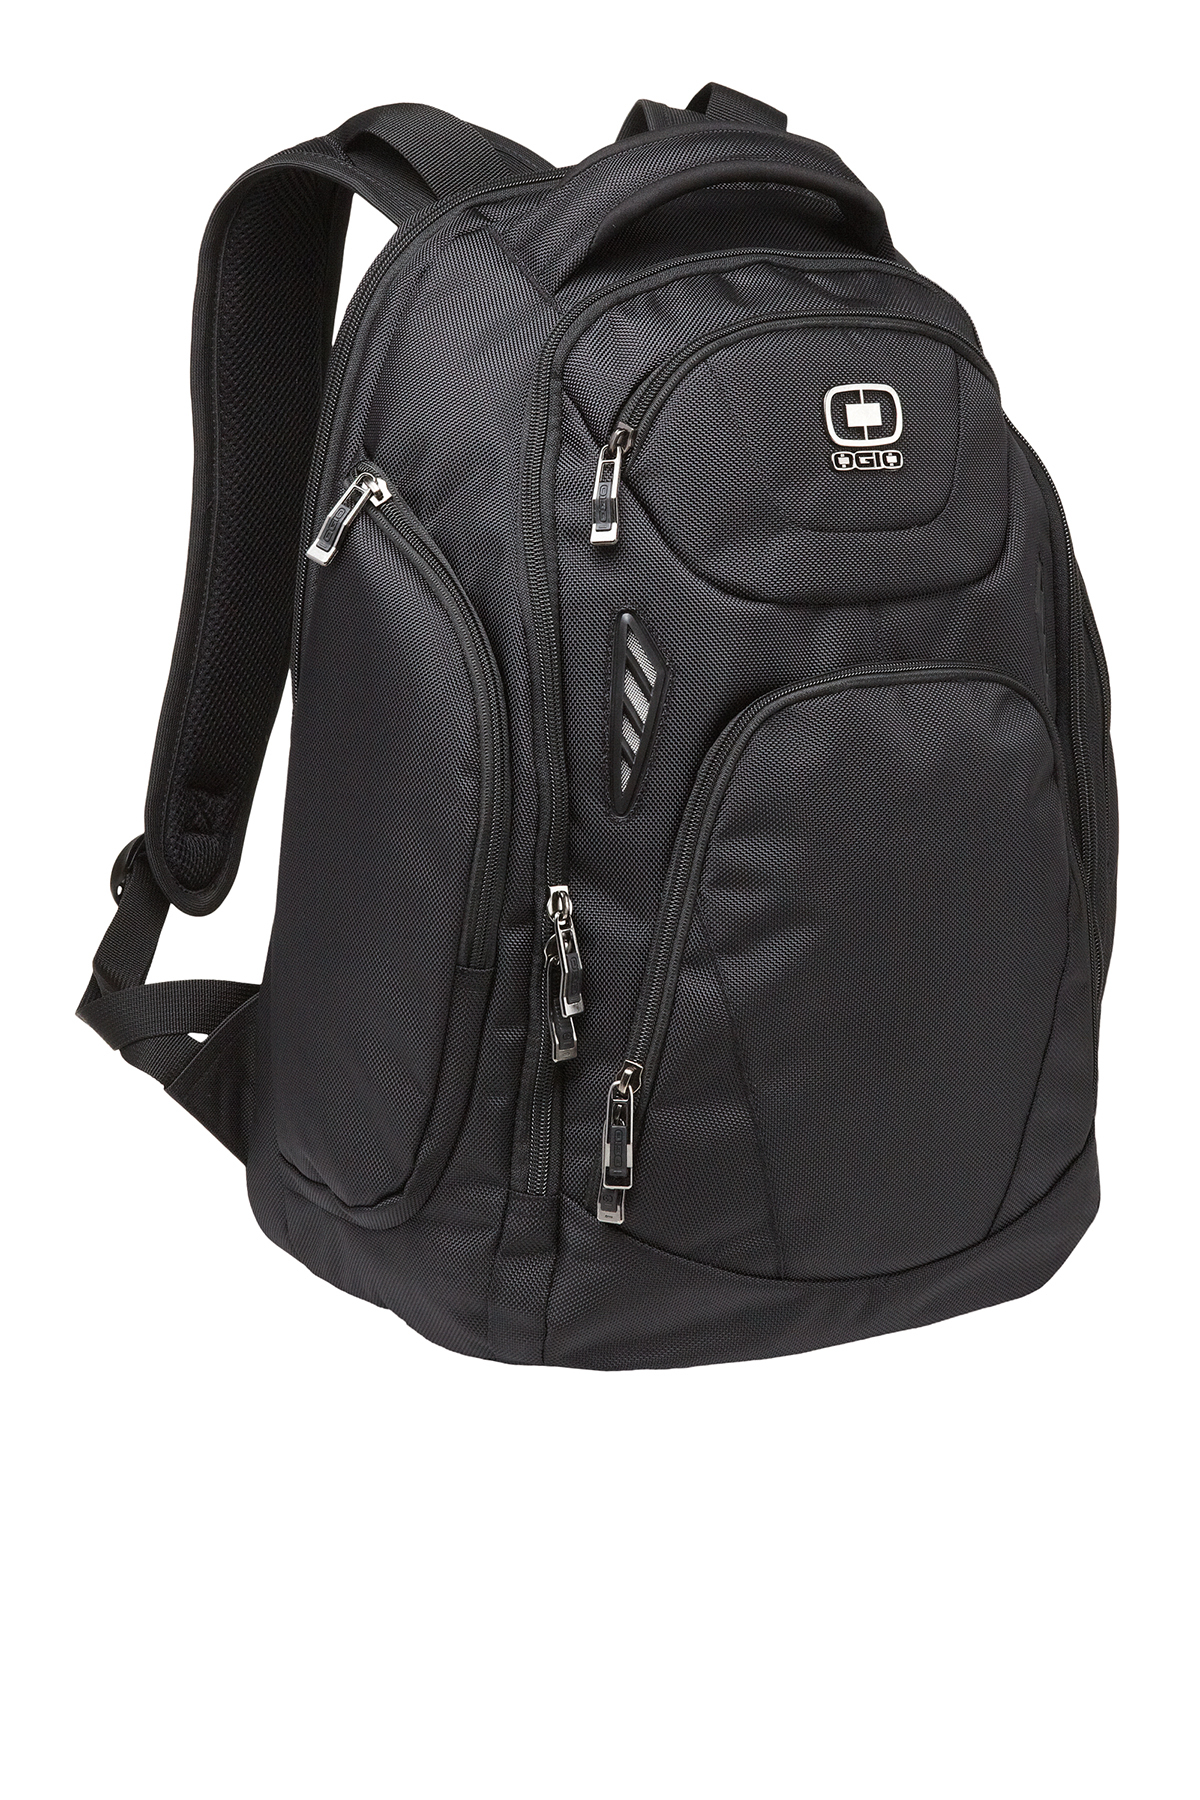 Ogio Mercur Pack Backpacks Bags Sanmar